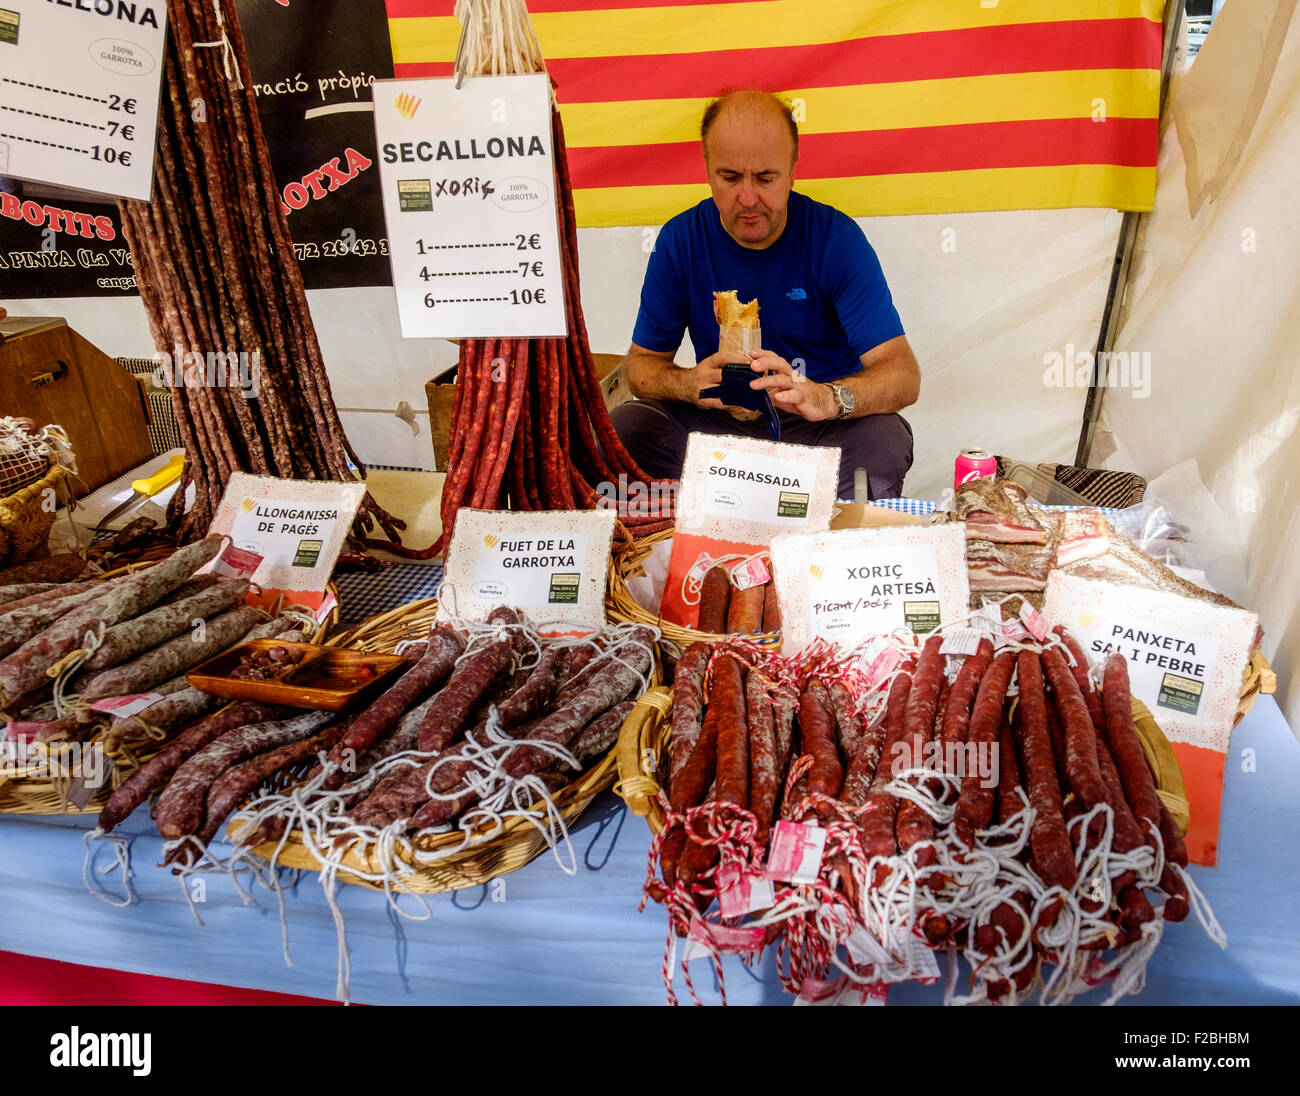 Flohmarkt-Händler und Würstchen für den Verkauf auf einem Marktstand in der Rambla del Poblenou, Barcelona, Katalonien, Spanien Stockfoto